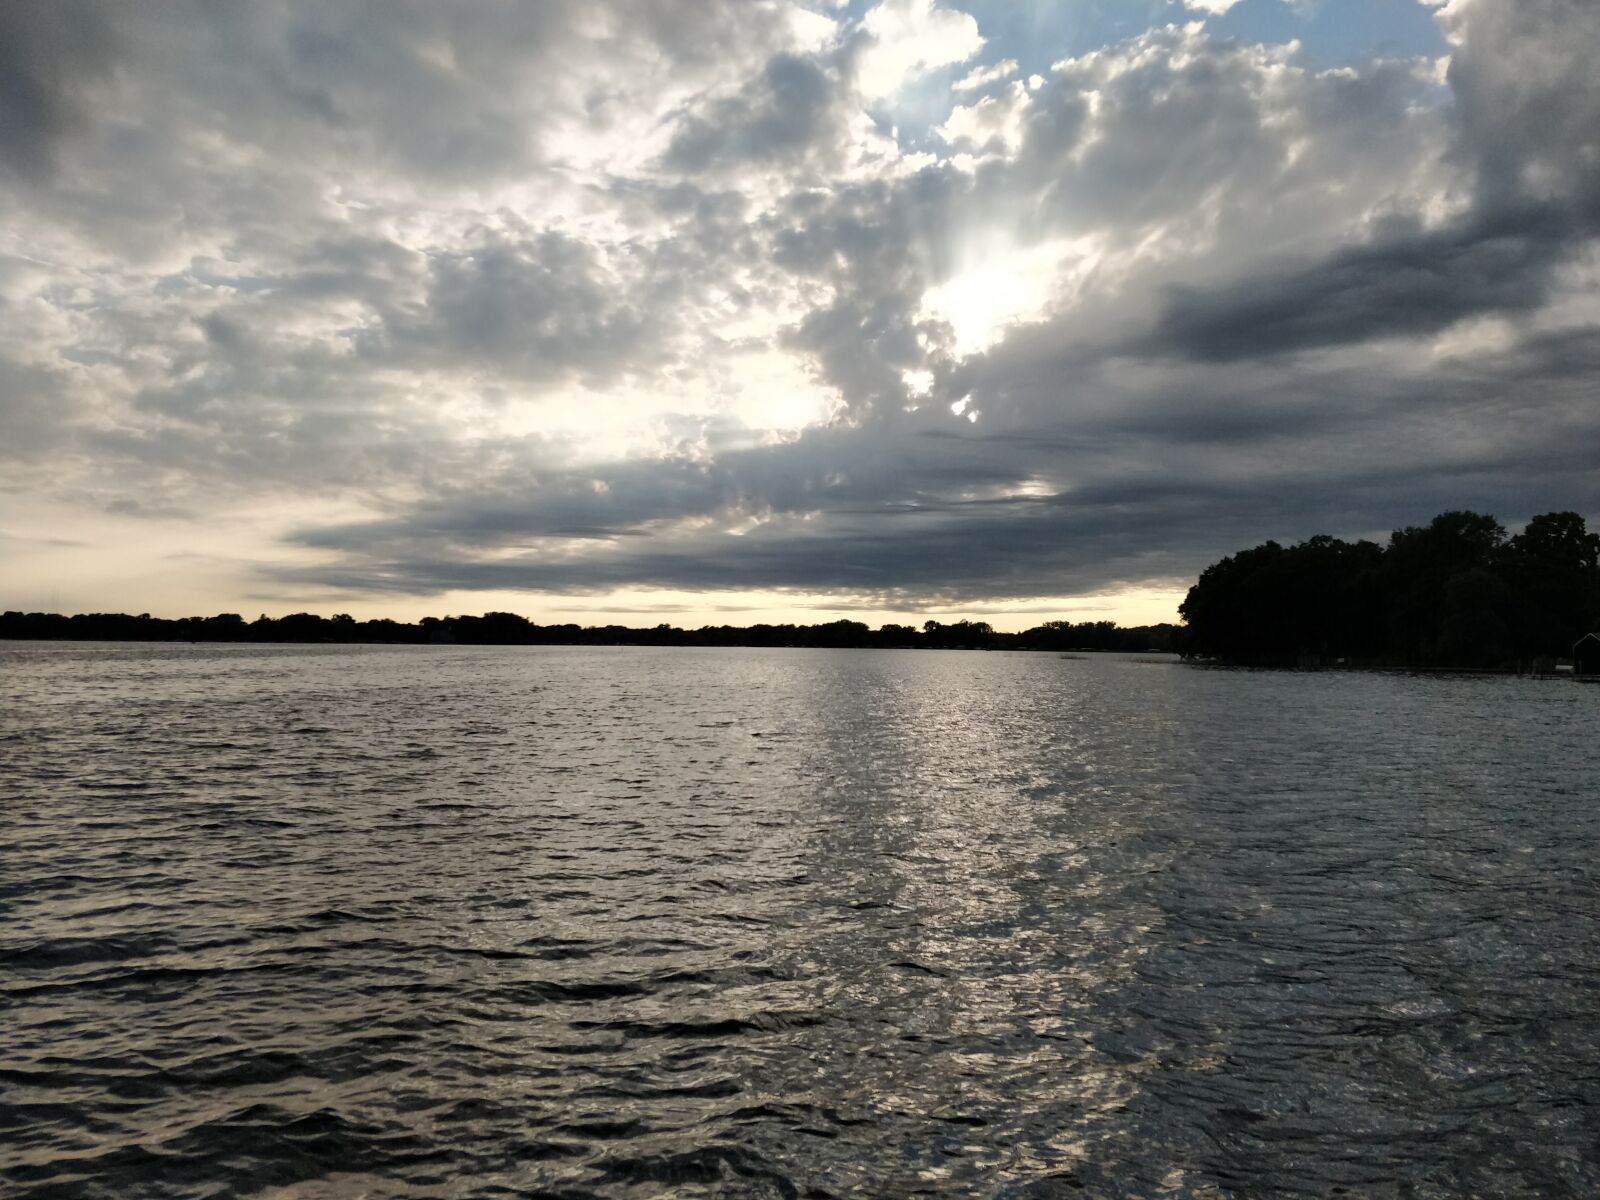 OnePlus 5 sample photo. Lake, sunset, horizon photography